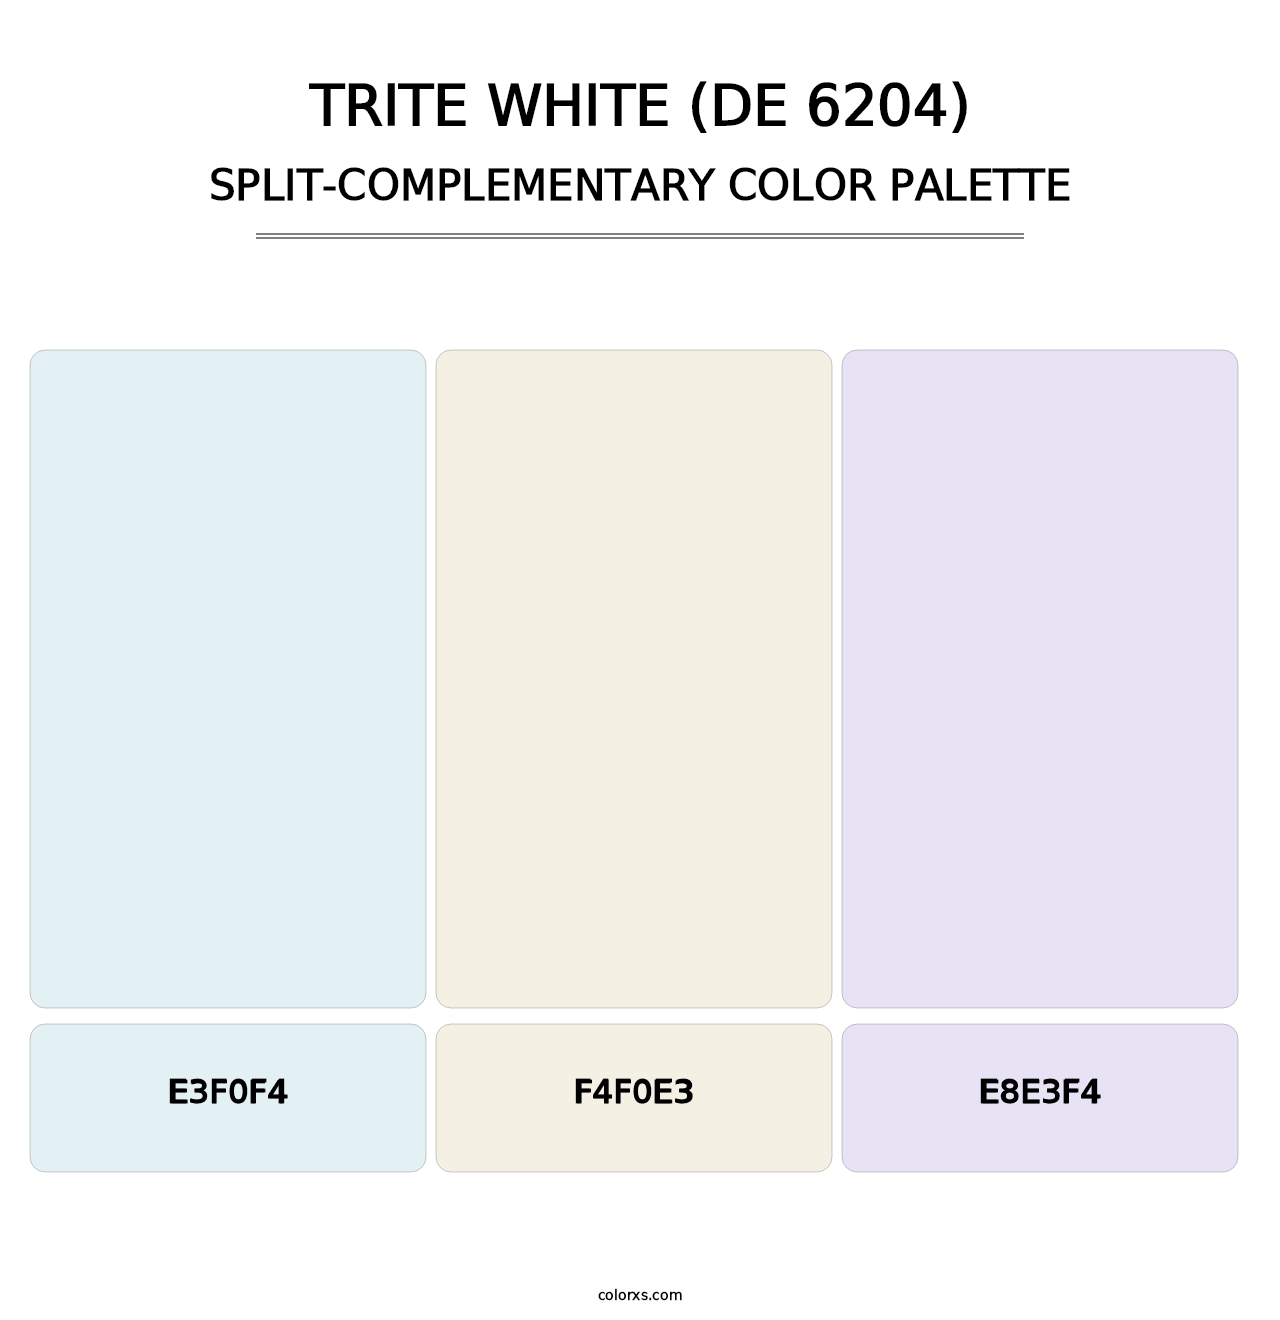 Trite White (DE 6204) - Split-Complementary Color Palette